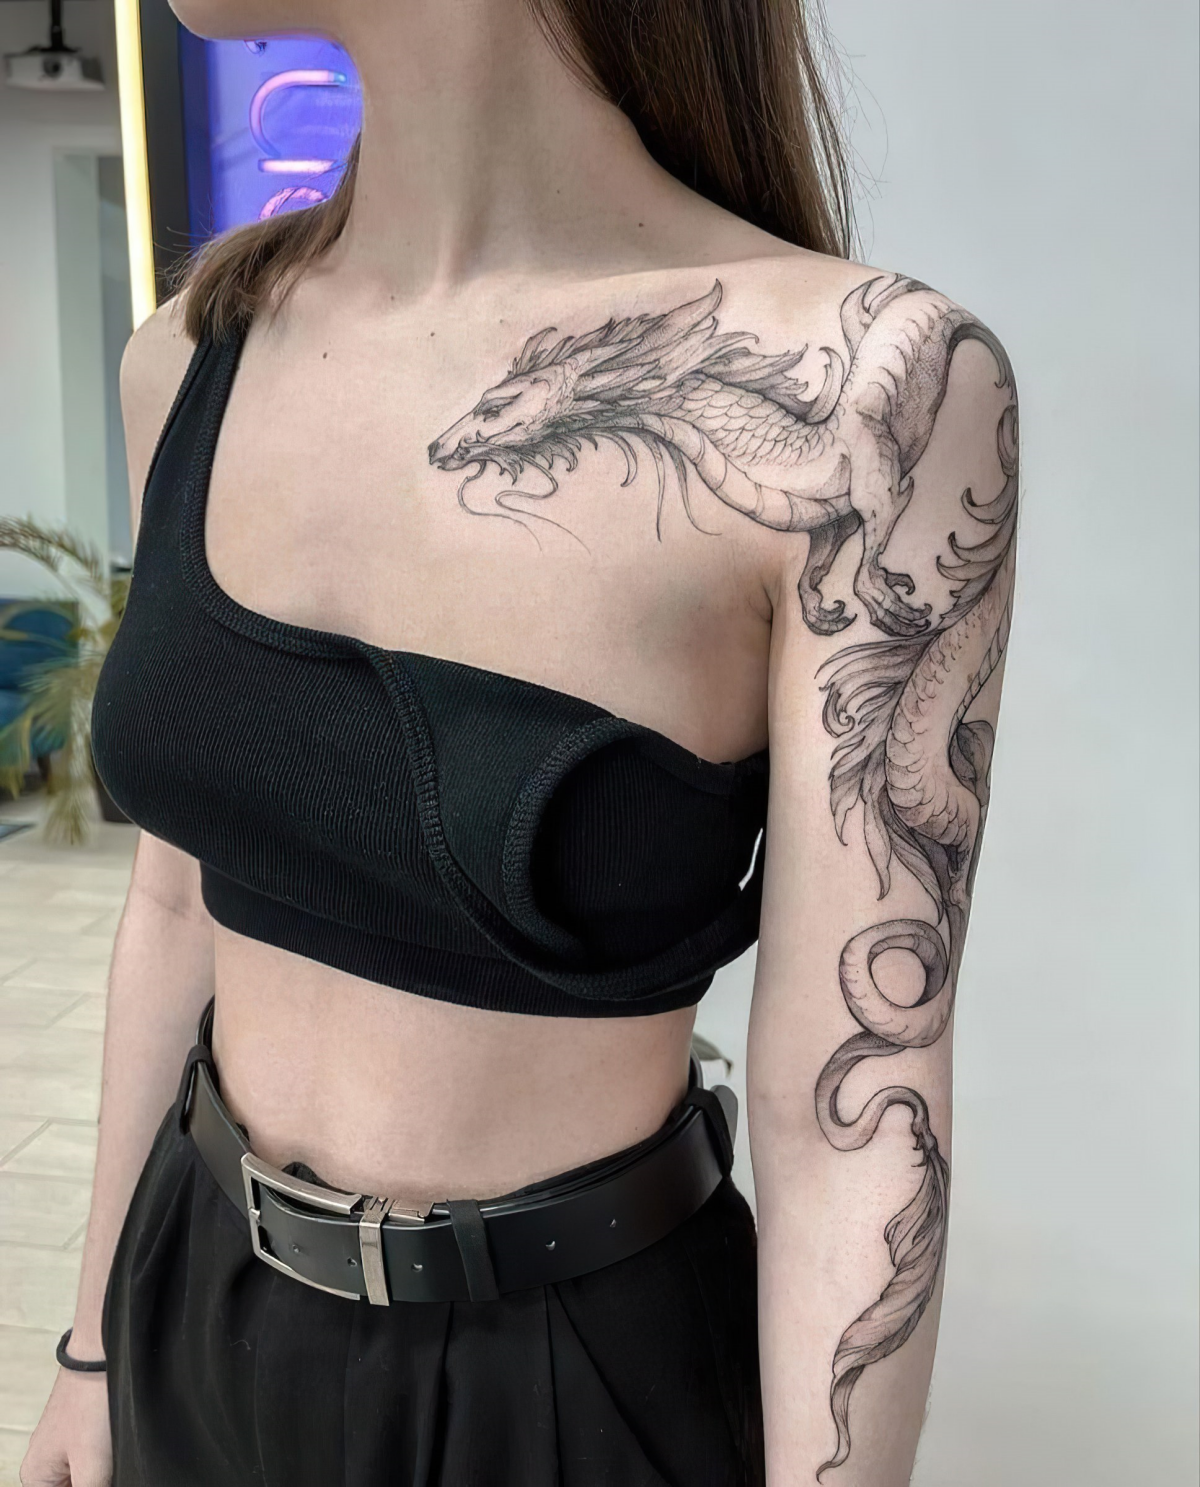 schulter tattoos fuer frauen mit dragon motiven